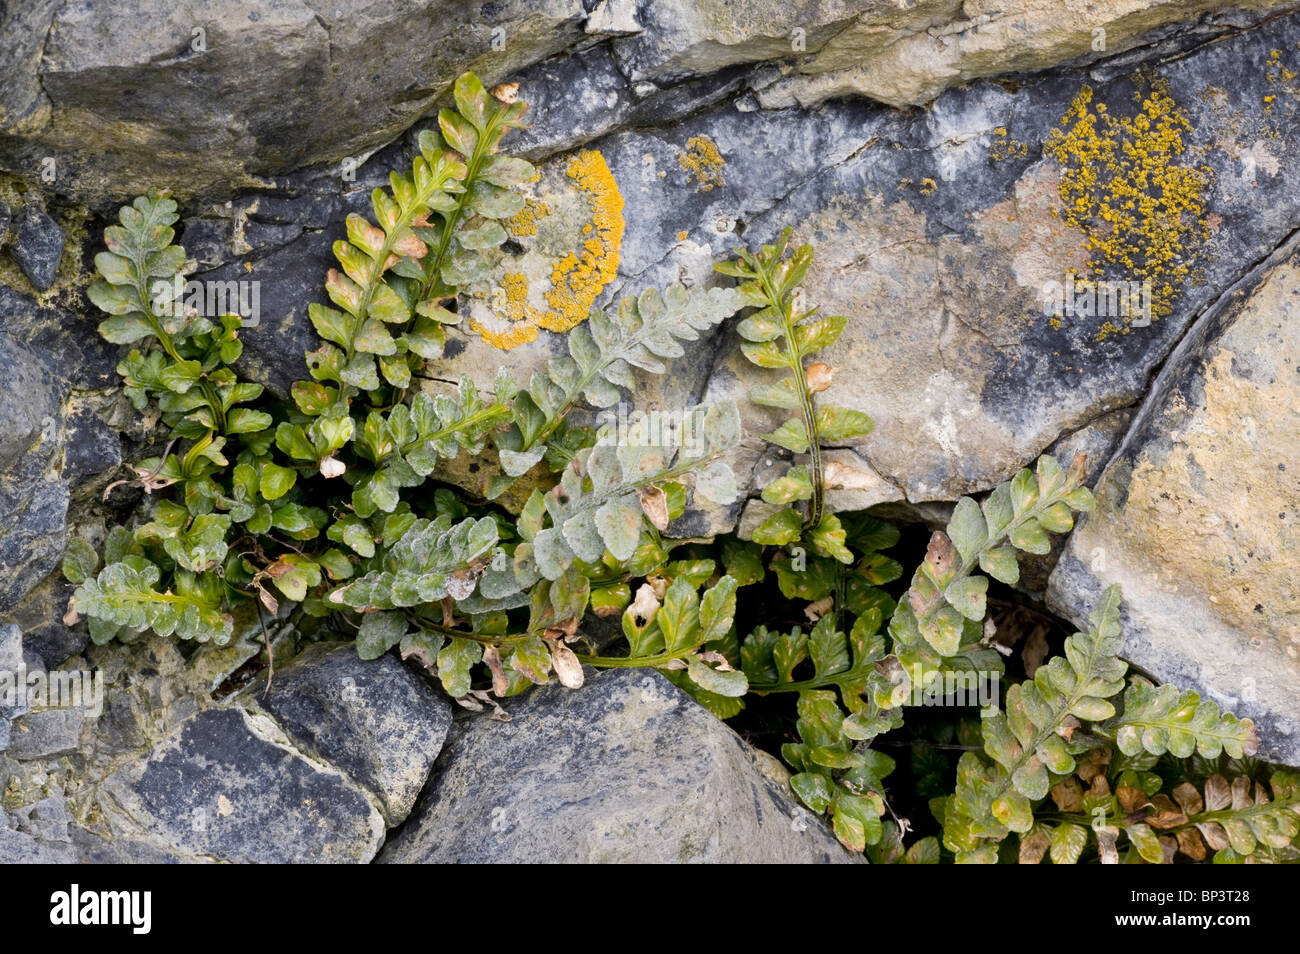 Sea spleenwort, Asplenium marinum on sea cliffs, Eire Stock Photo